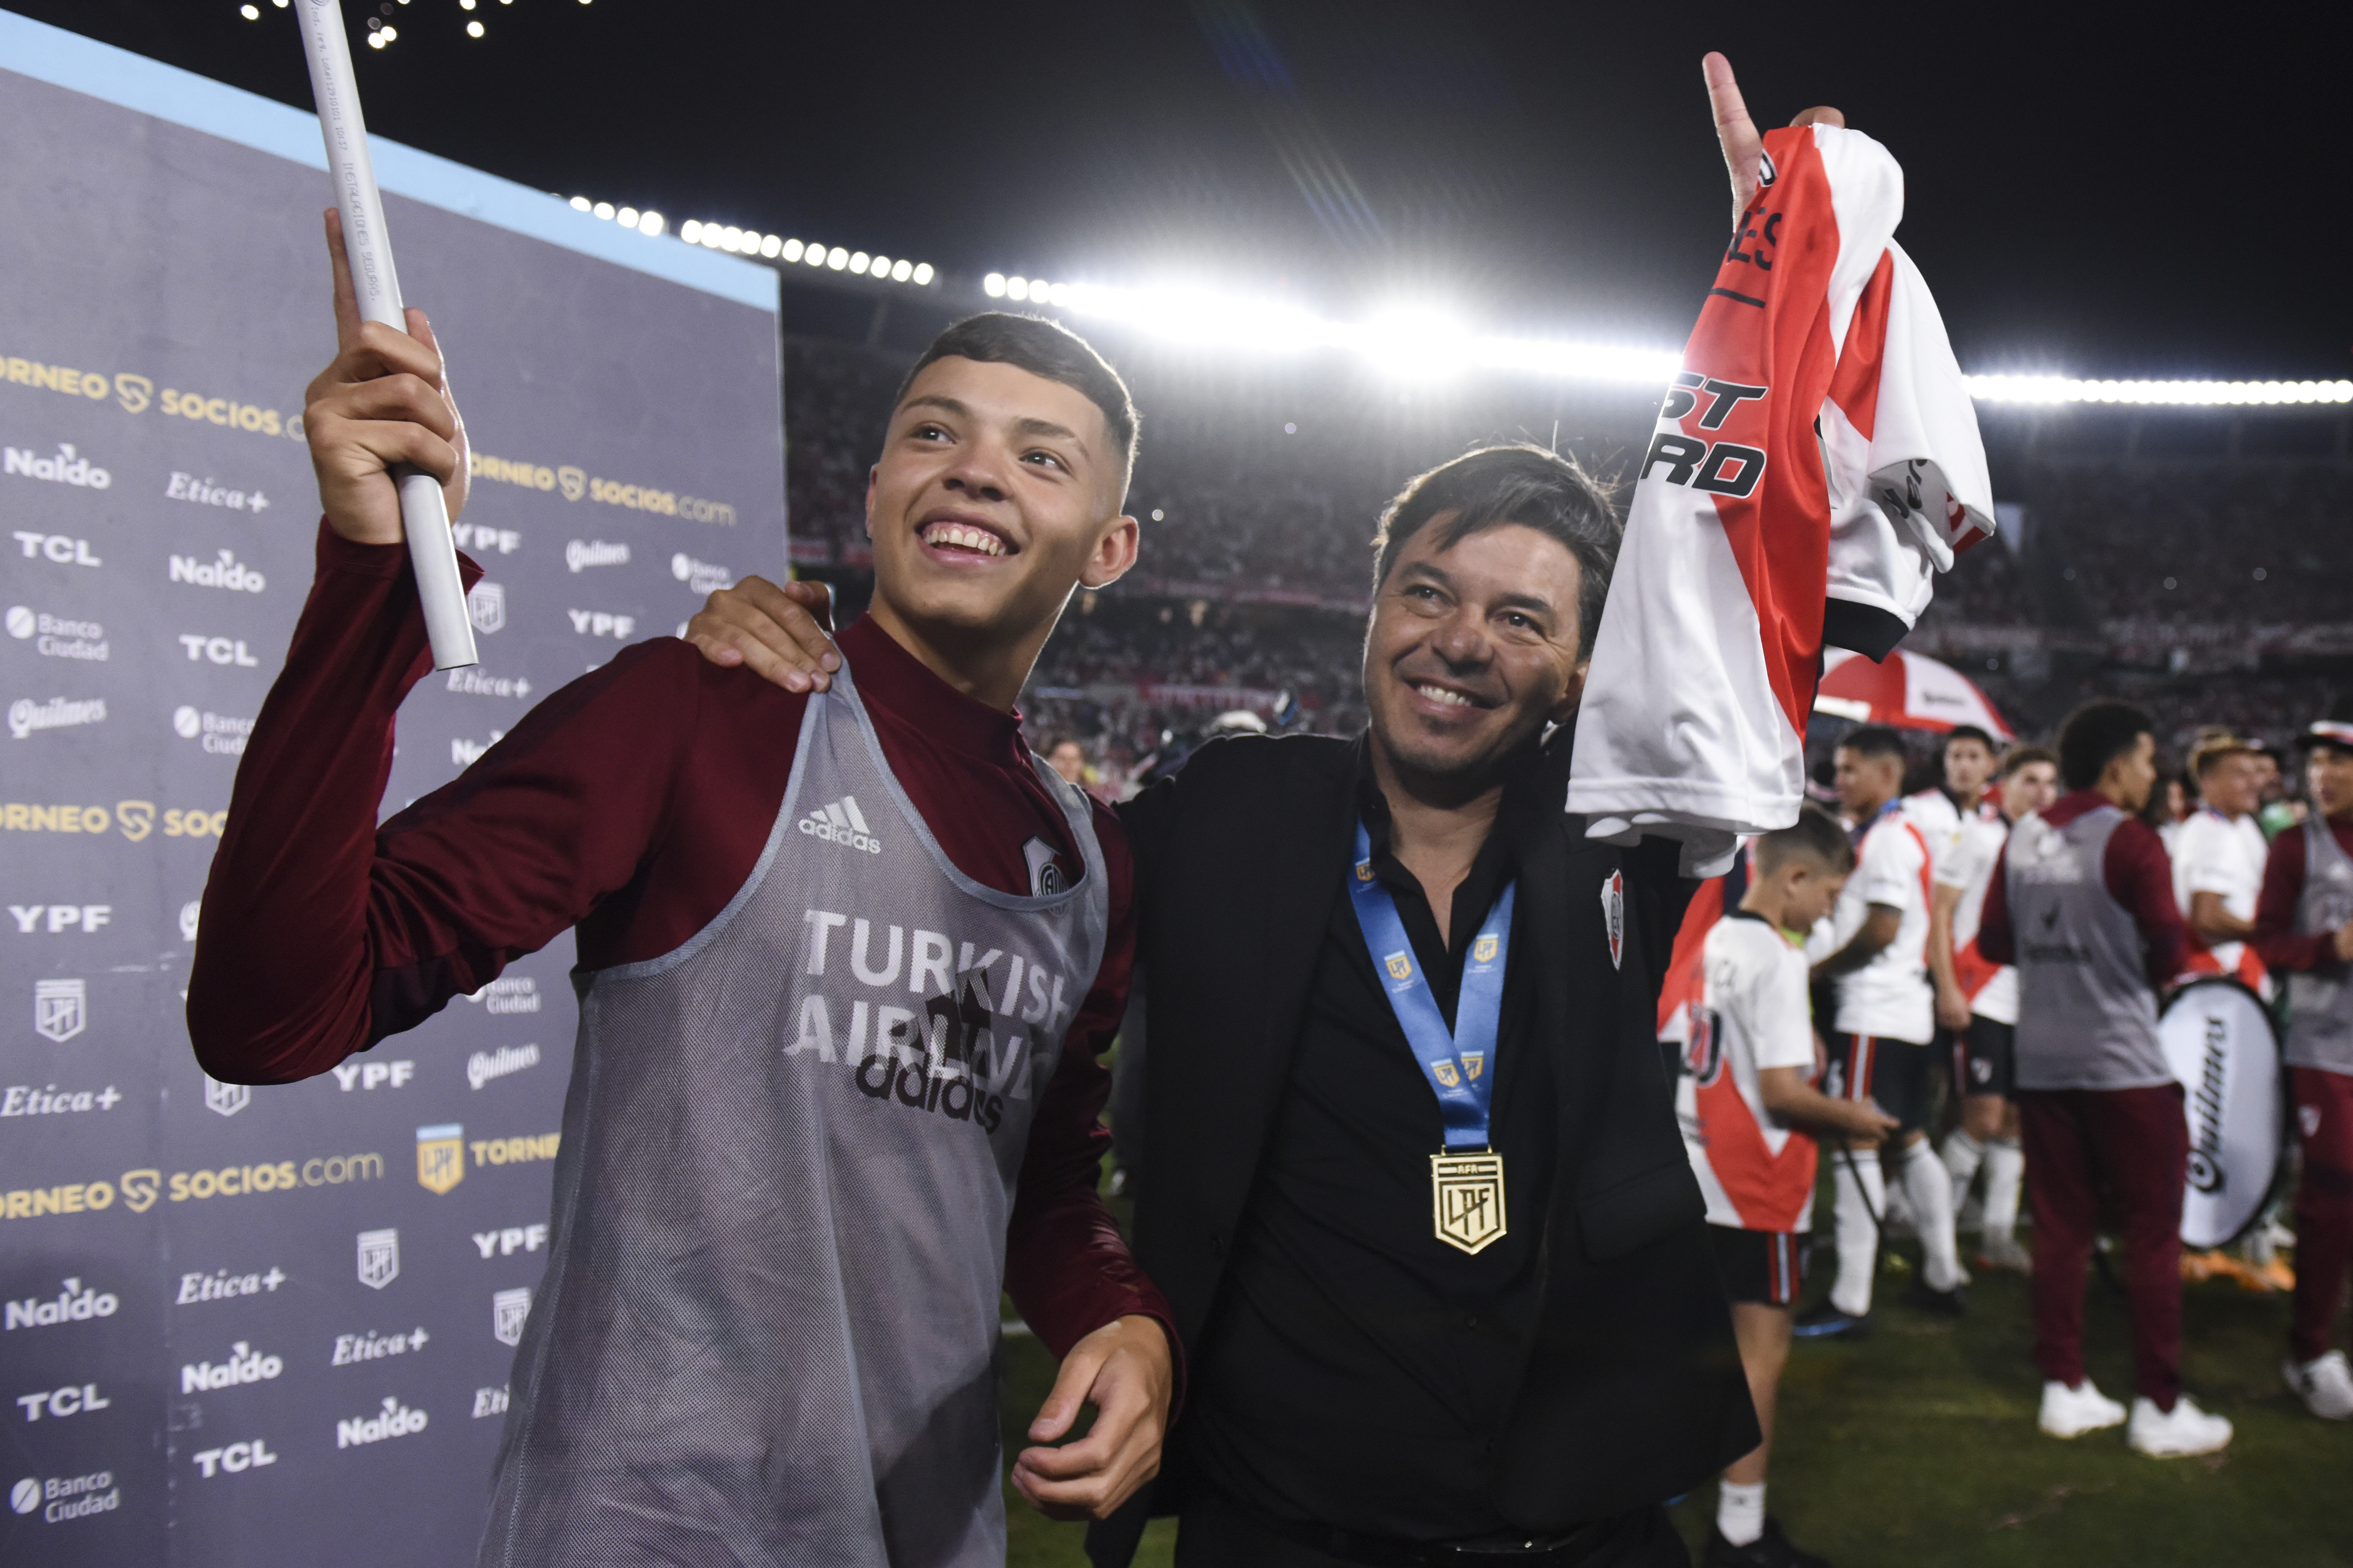 Matías junto a Marcelo durante los festejos de la Liga Profesional a fines de 2021 (Foto: Getty Images)